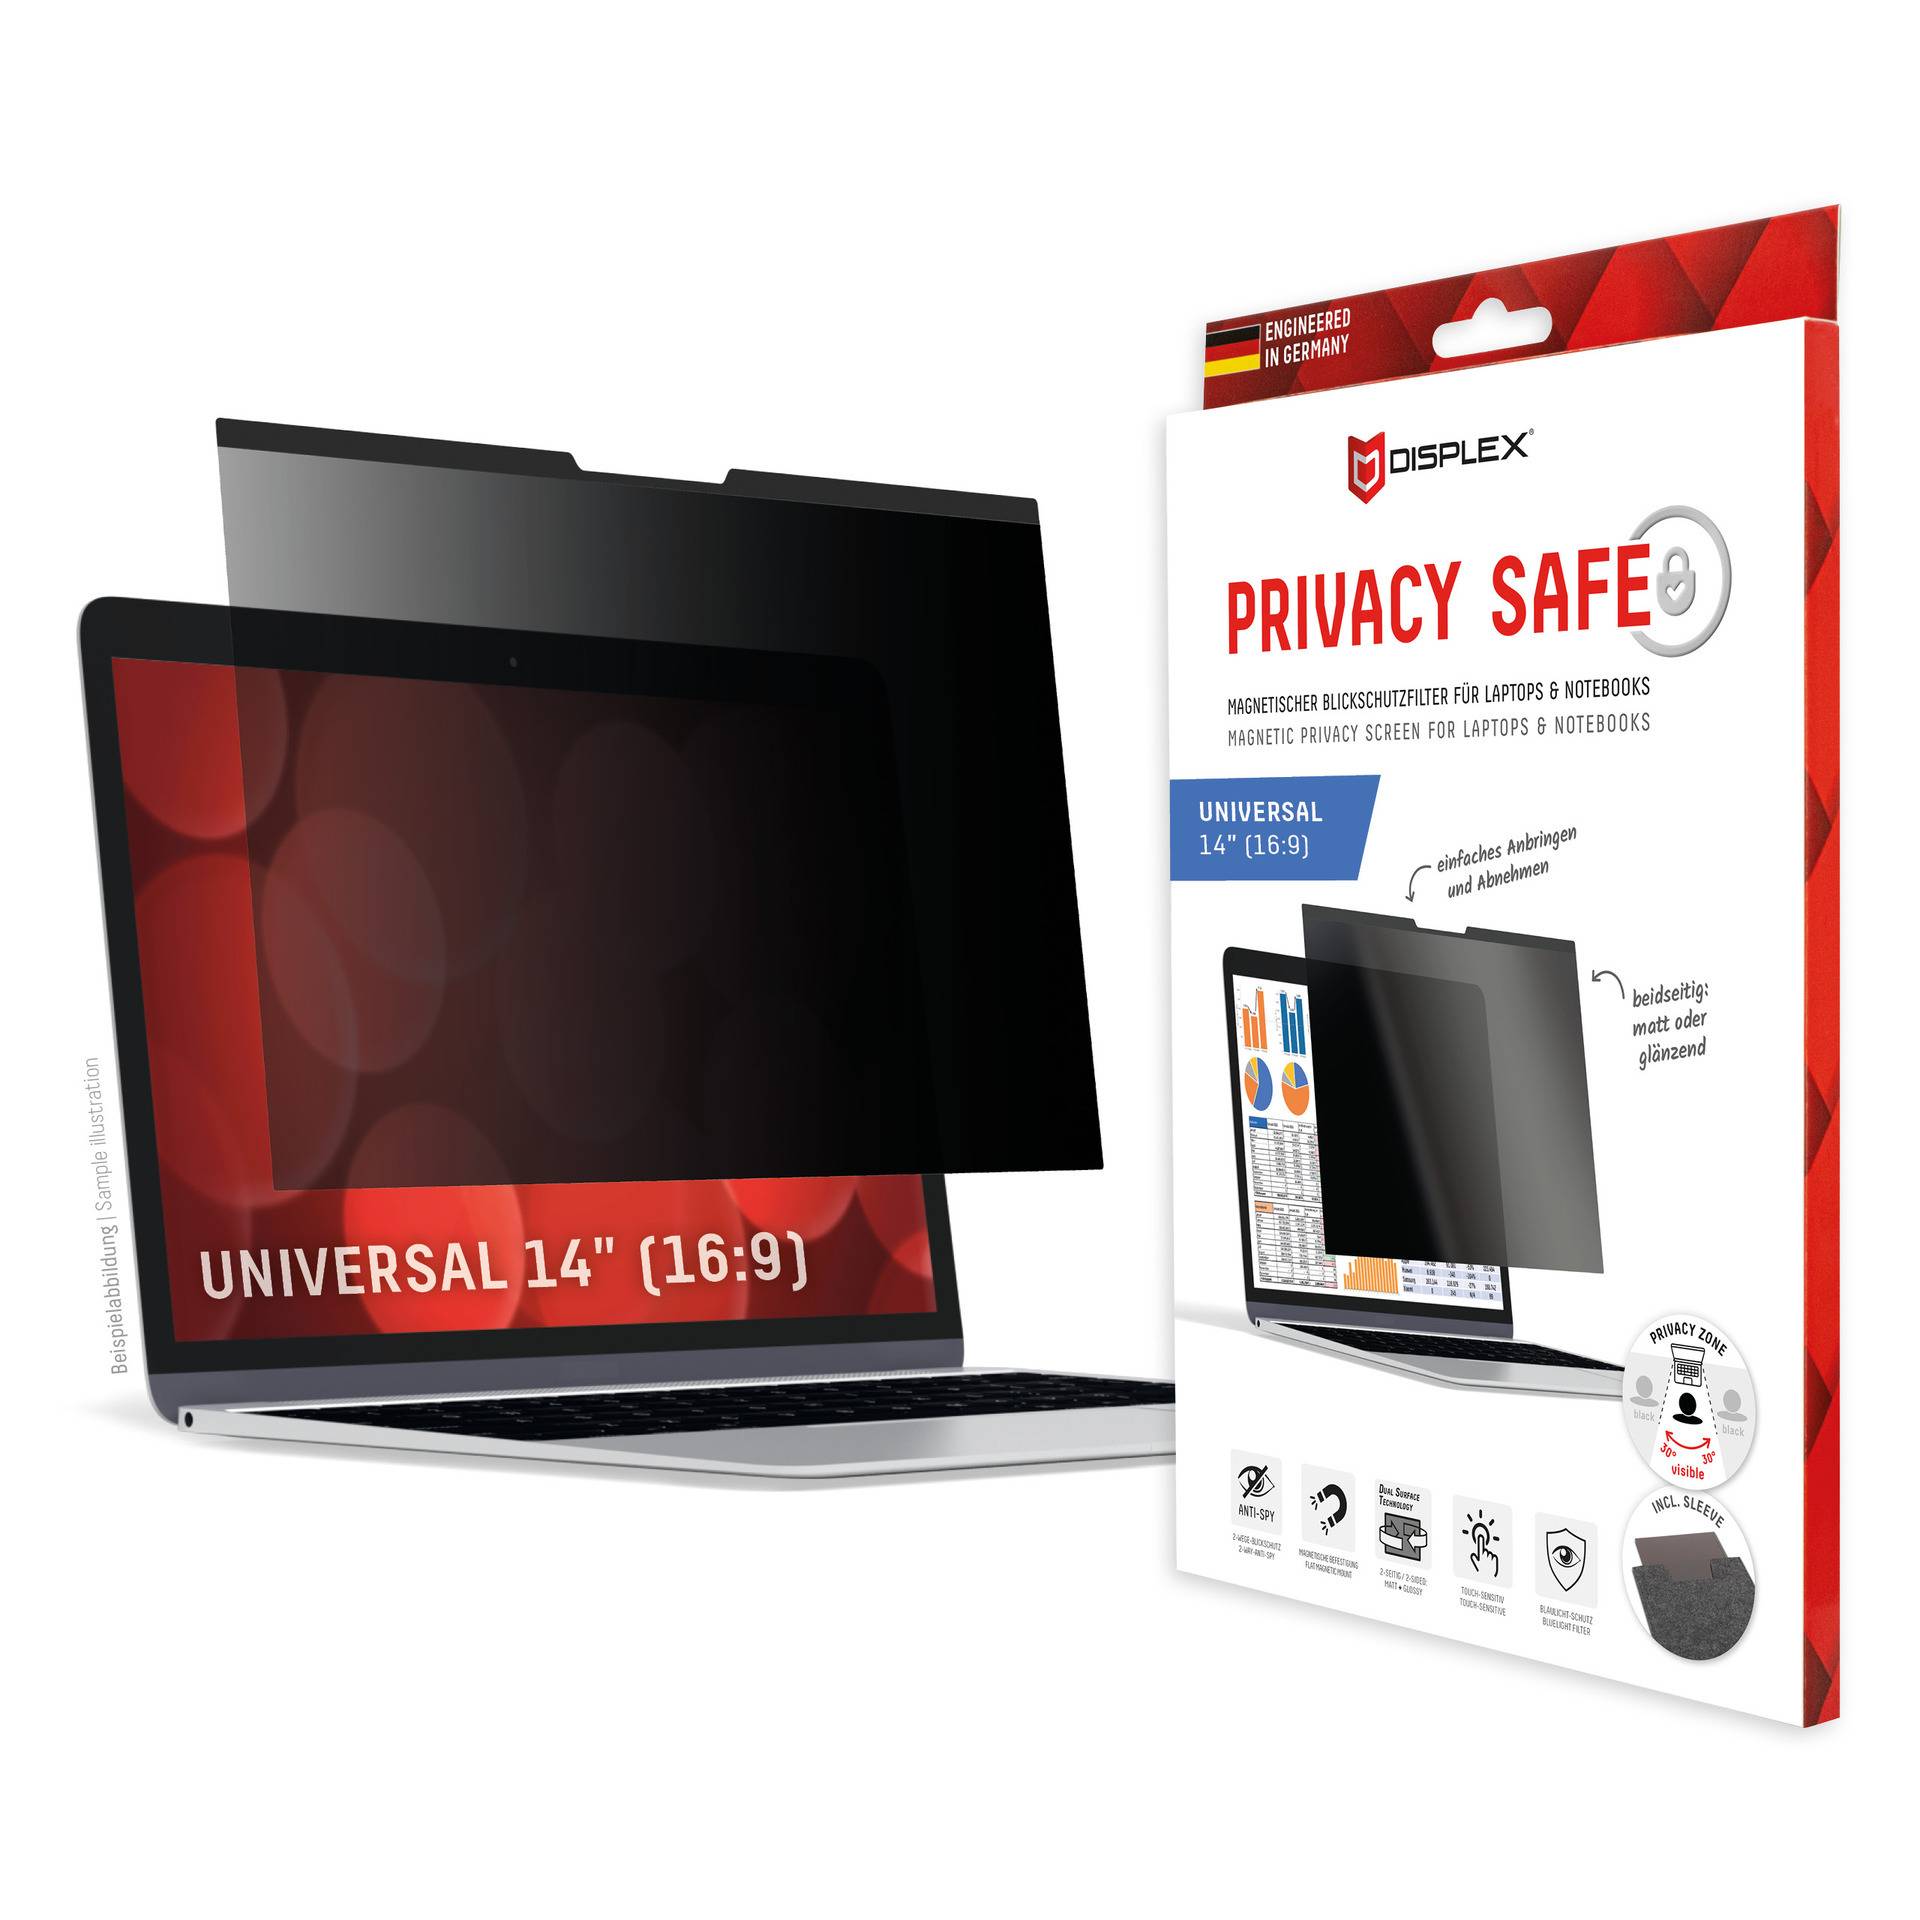 DISPLEX Privacy Safe Blickschutzfilter Universal 14", 16:9, Anti-Reflex, Bluelight-Filter, Magnetische Befestigung von Displex